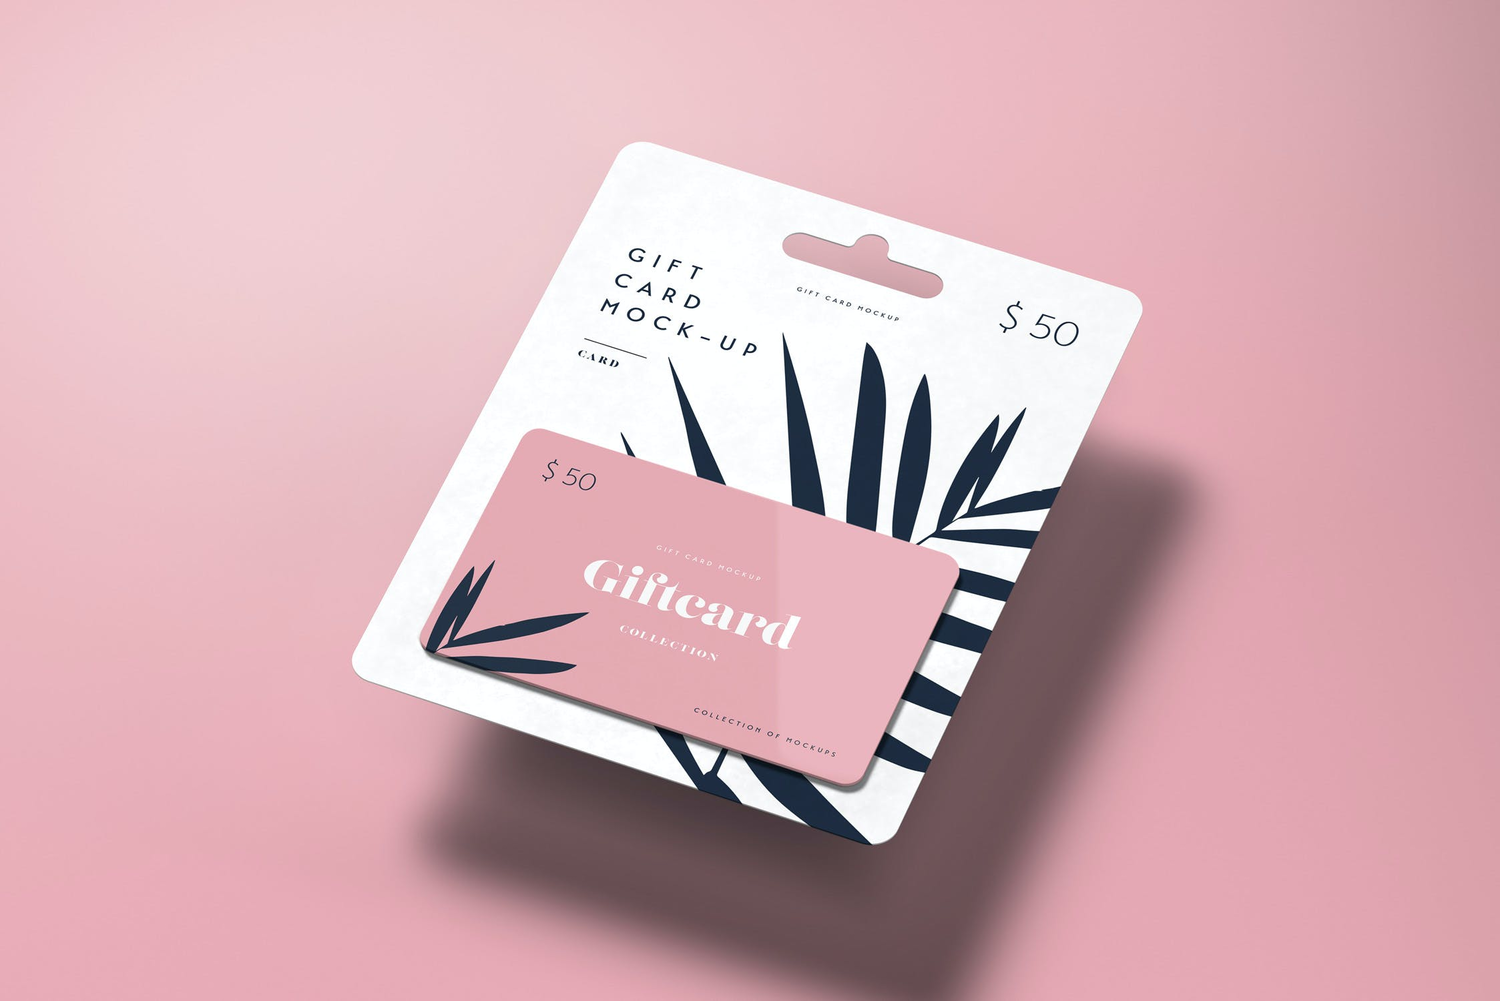 4767 悬挂式礼品卡购物消费磁卡设计贴图ps样机素材多角度展示效果模板 Gift Card Mock-up@GOOODME.COM